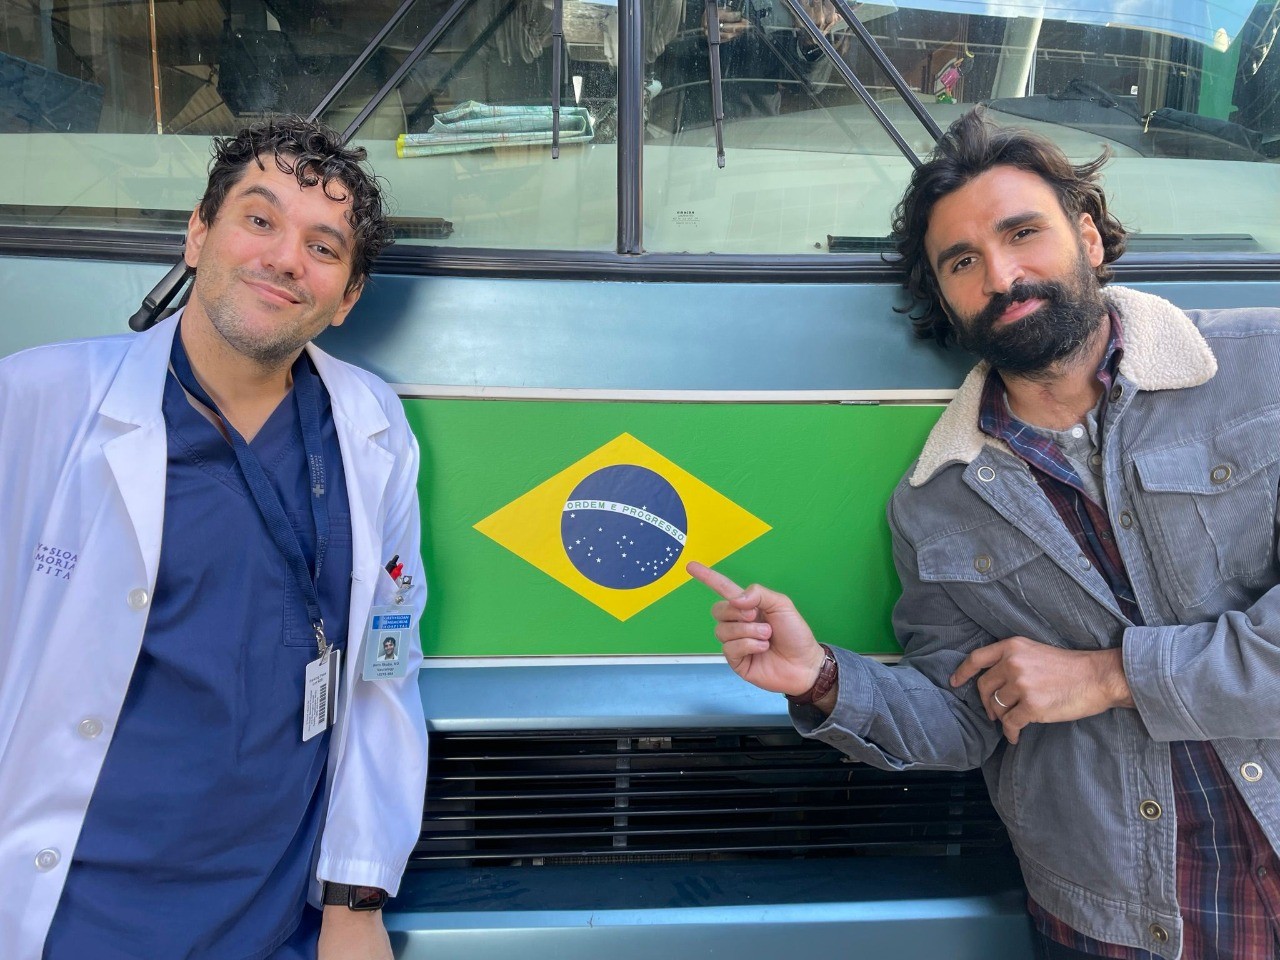 Estreia no Brasil episódio de Grey's Anatomy escrito por roteirista de Piracicaba, interior de SP; Vídeo